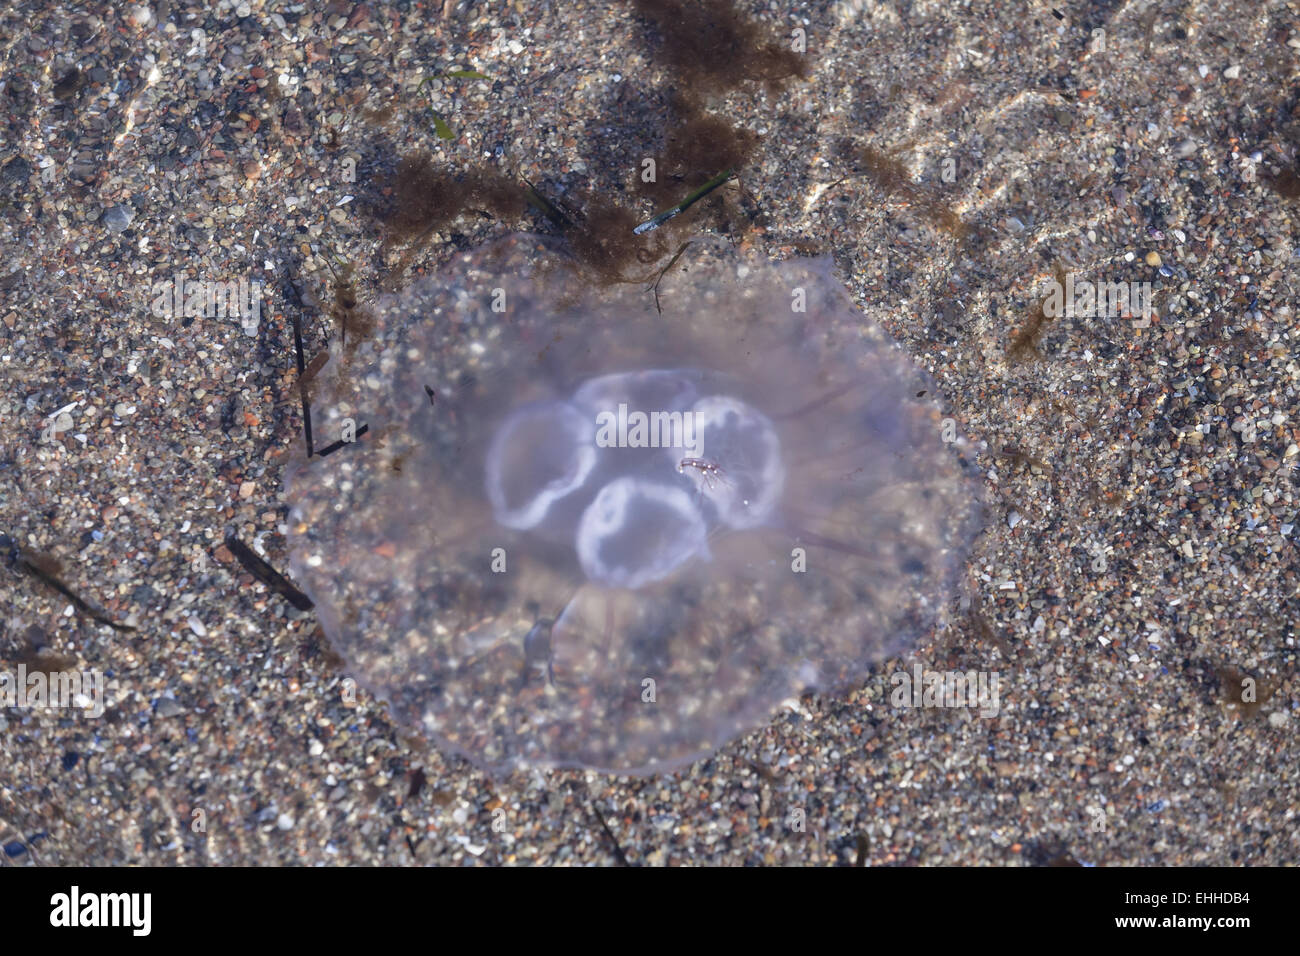 Jellyfish (Aurelia aurita) Stock Photo